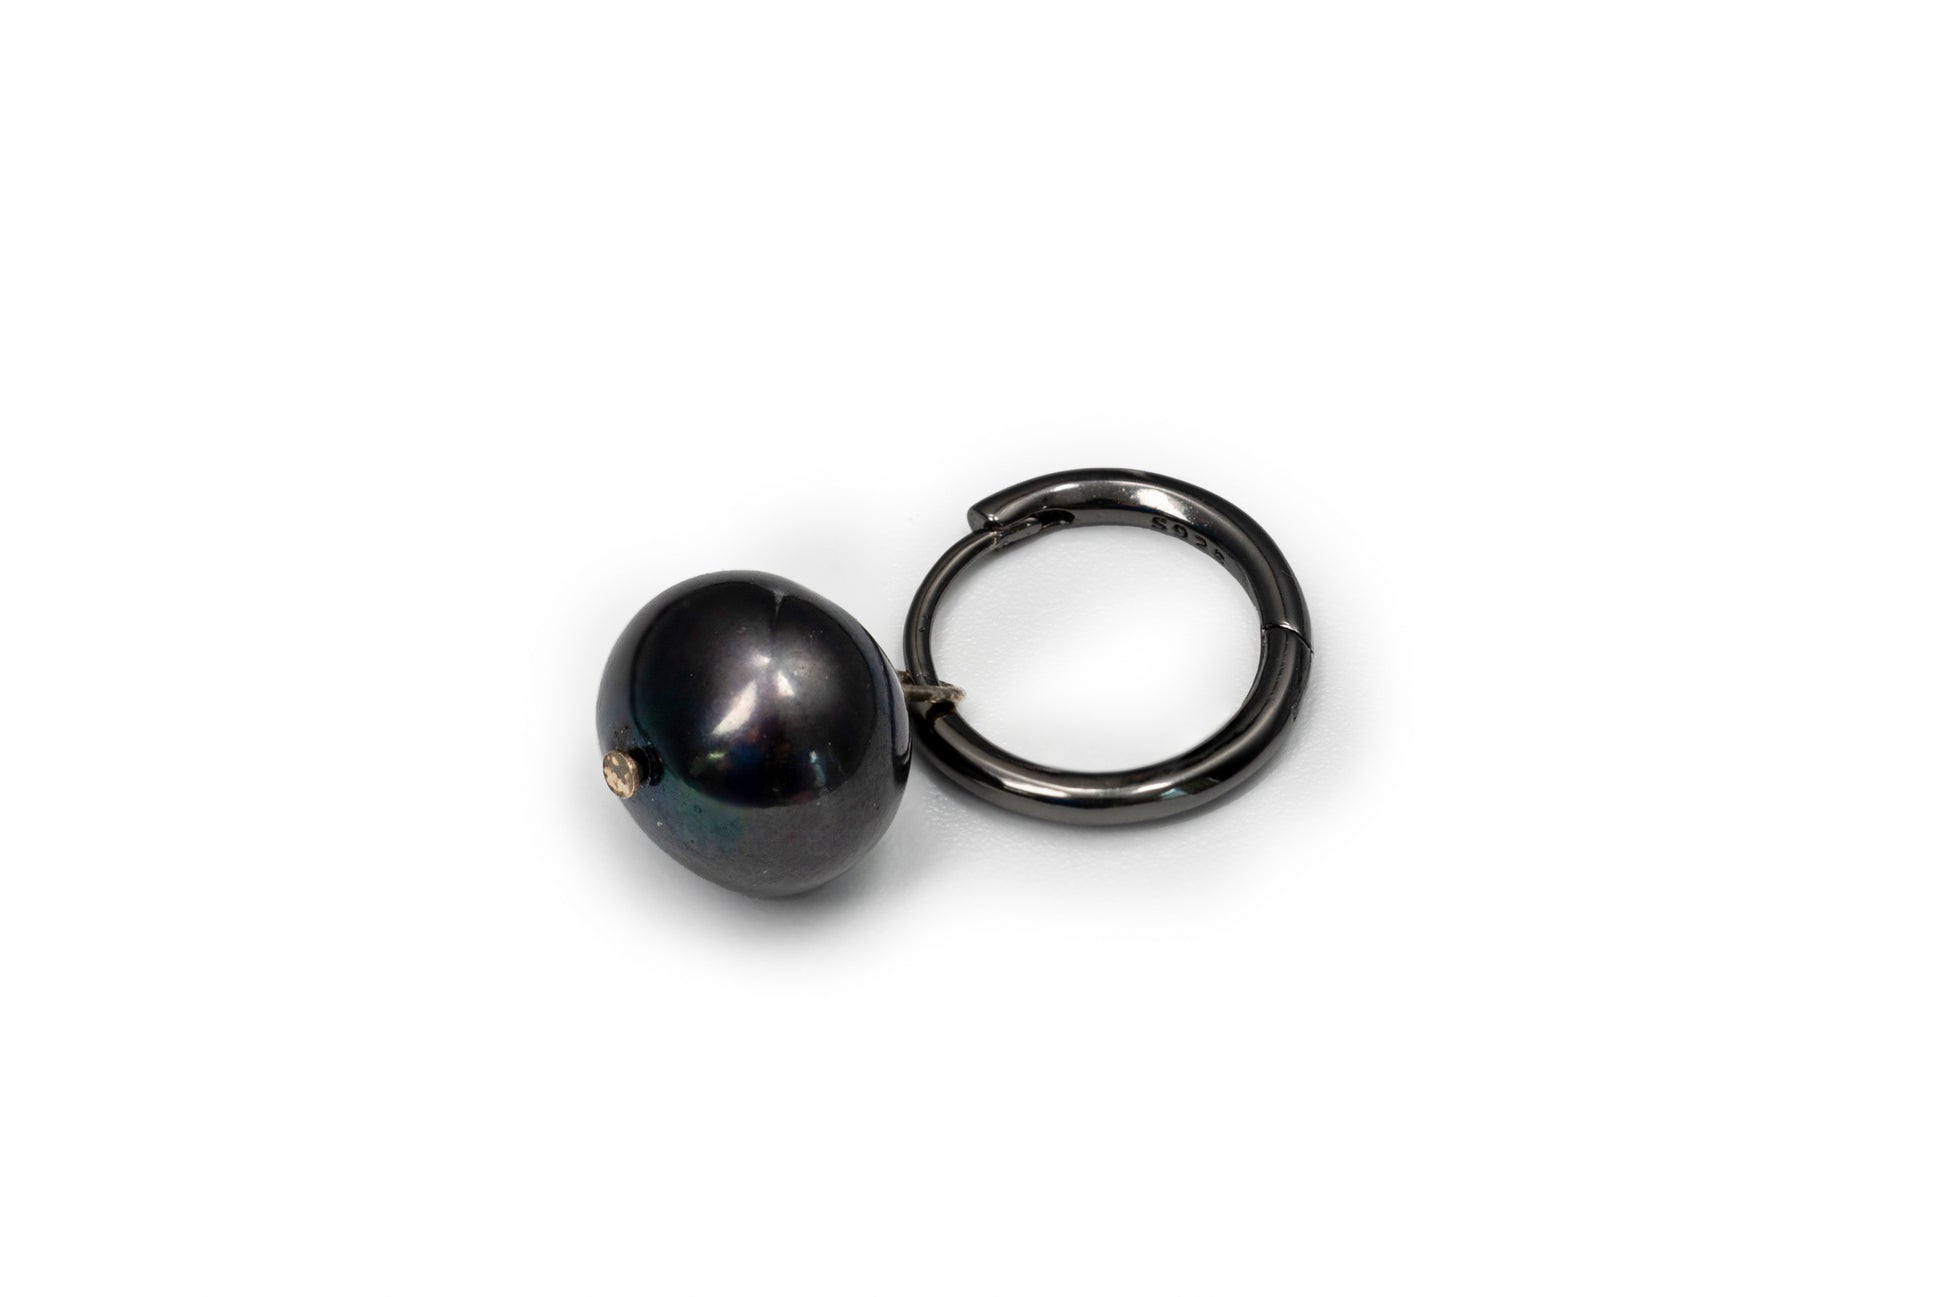 Black Round Drop Earrings - Black Earring for Women